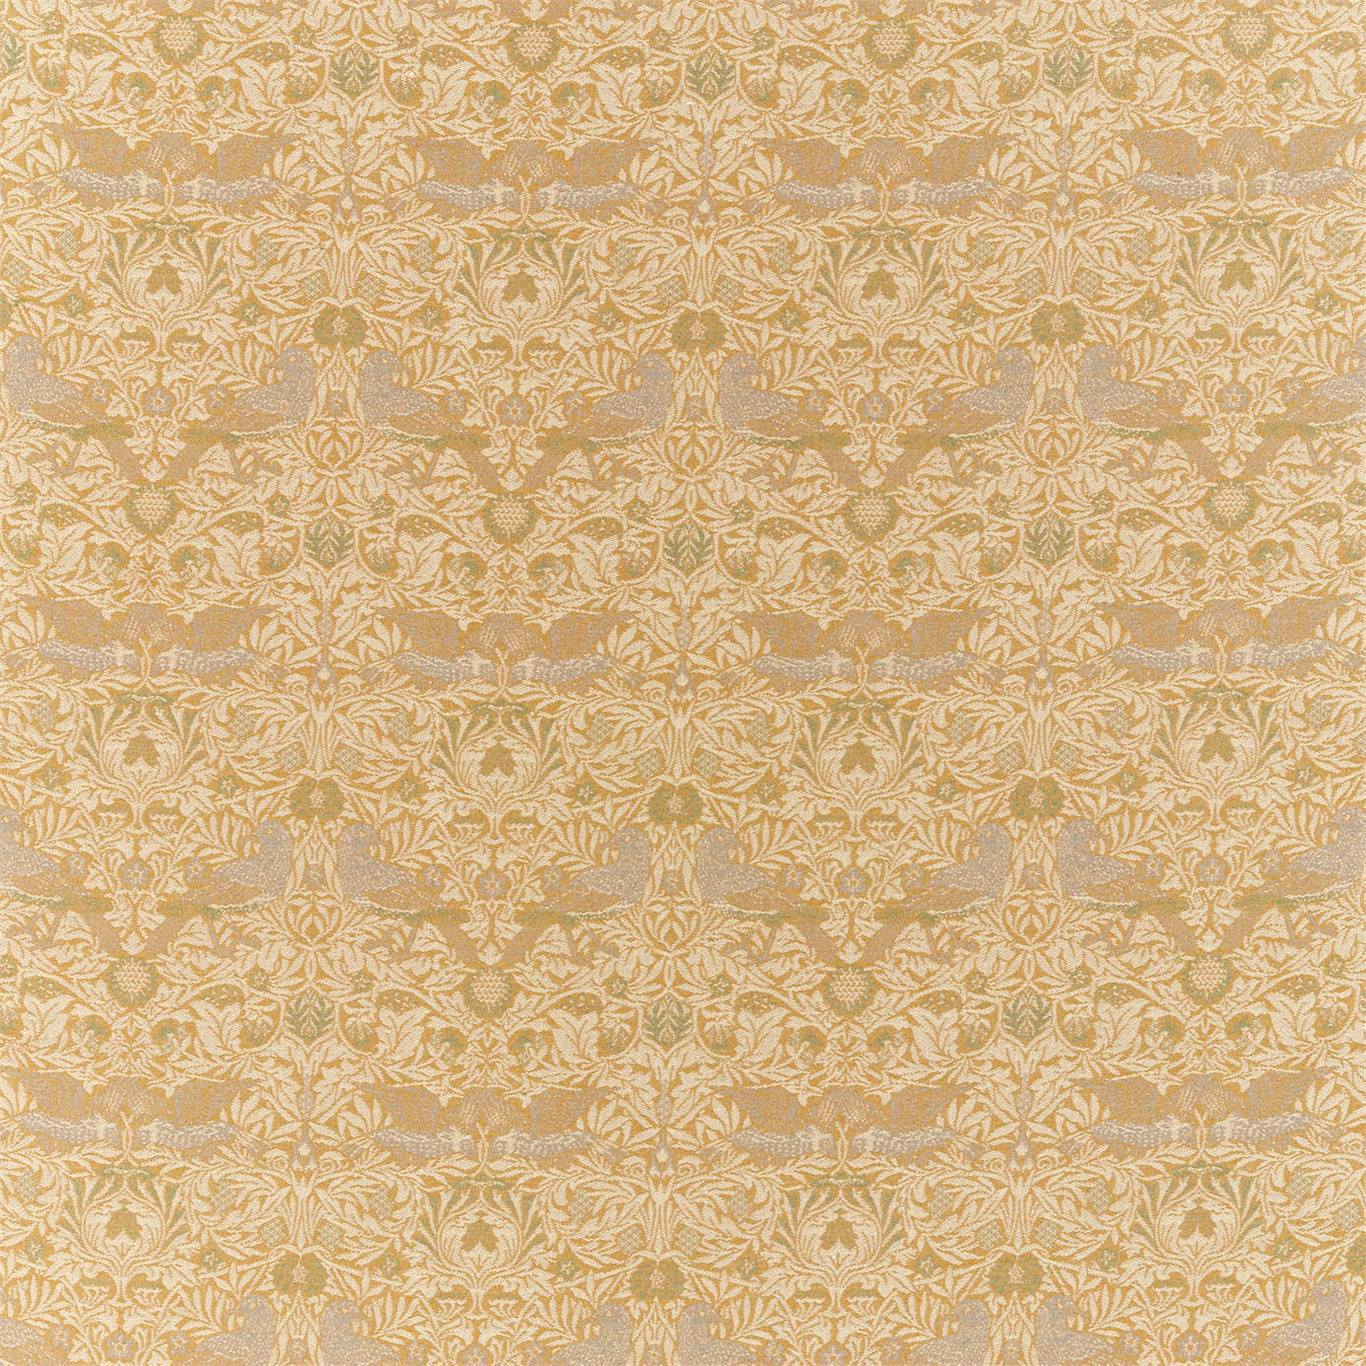 Bird Weave Fabric by Morris & Co. - DMLF236848 - Ochre